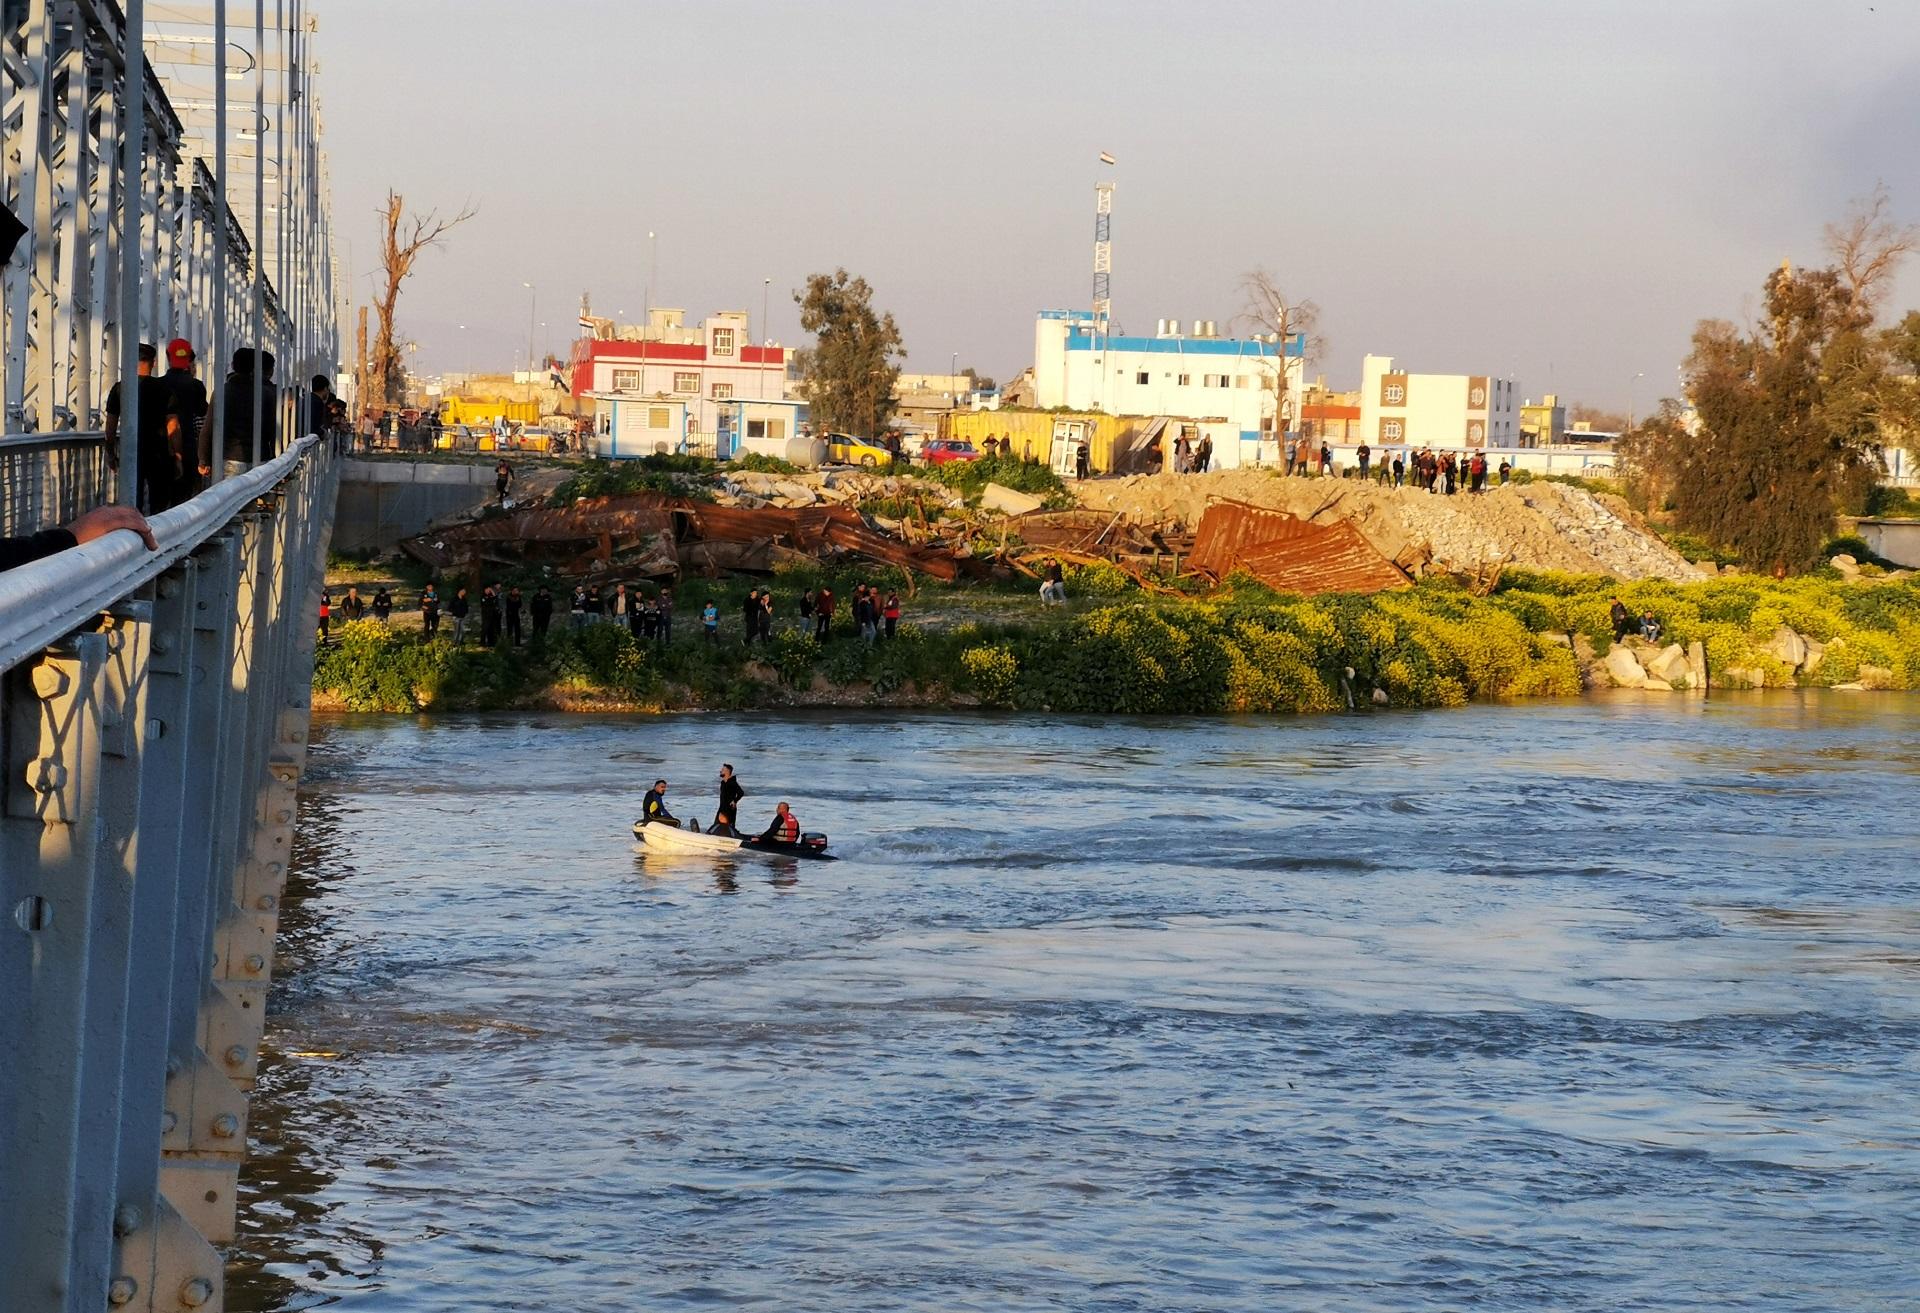 رجال إنقاذ عراقيون يبحثون عن ناجين غرقوا في نهر دجلة بالقرب من الموصل العراقية، 21 مارس 2019. رويترز 